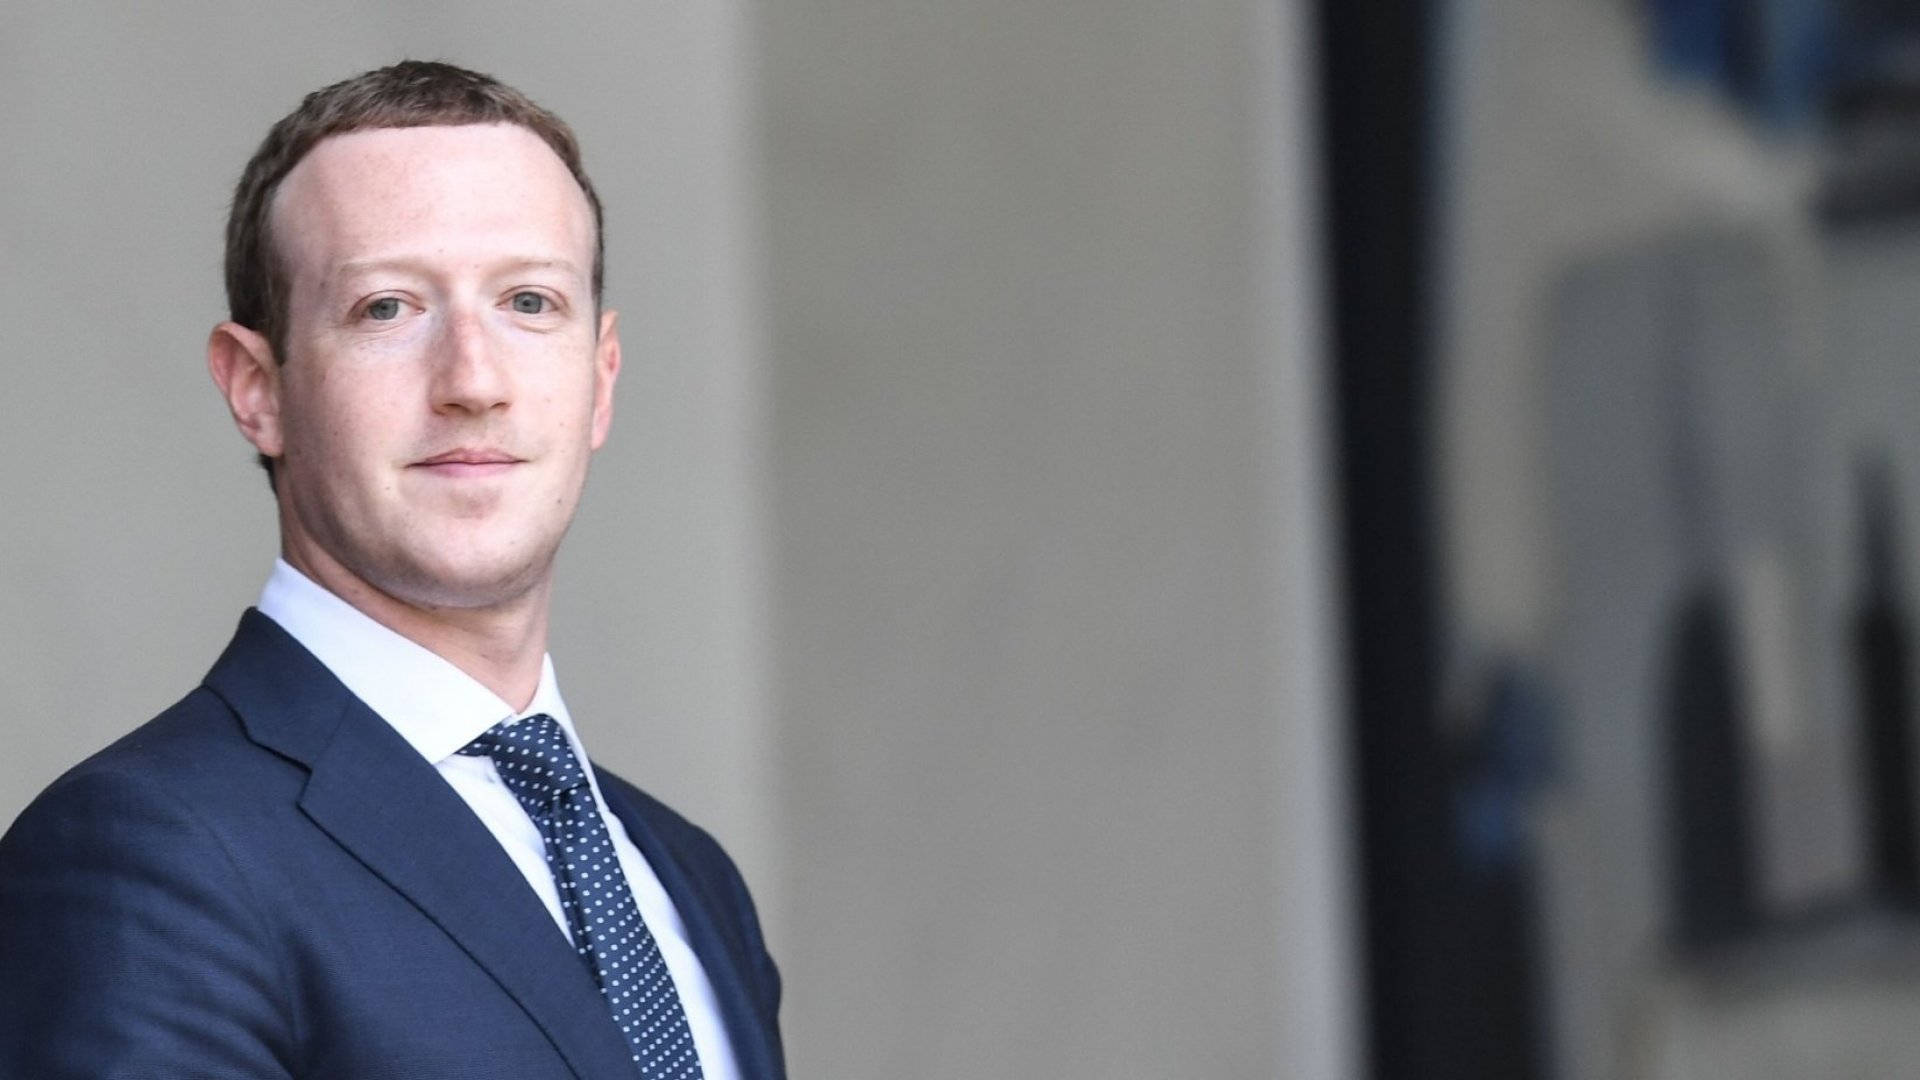 Mark Zuckerberg In Formal Suit Wallpaper